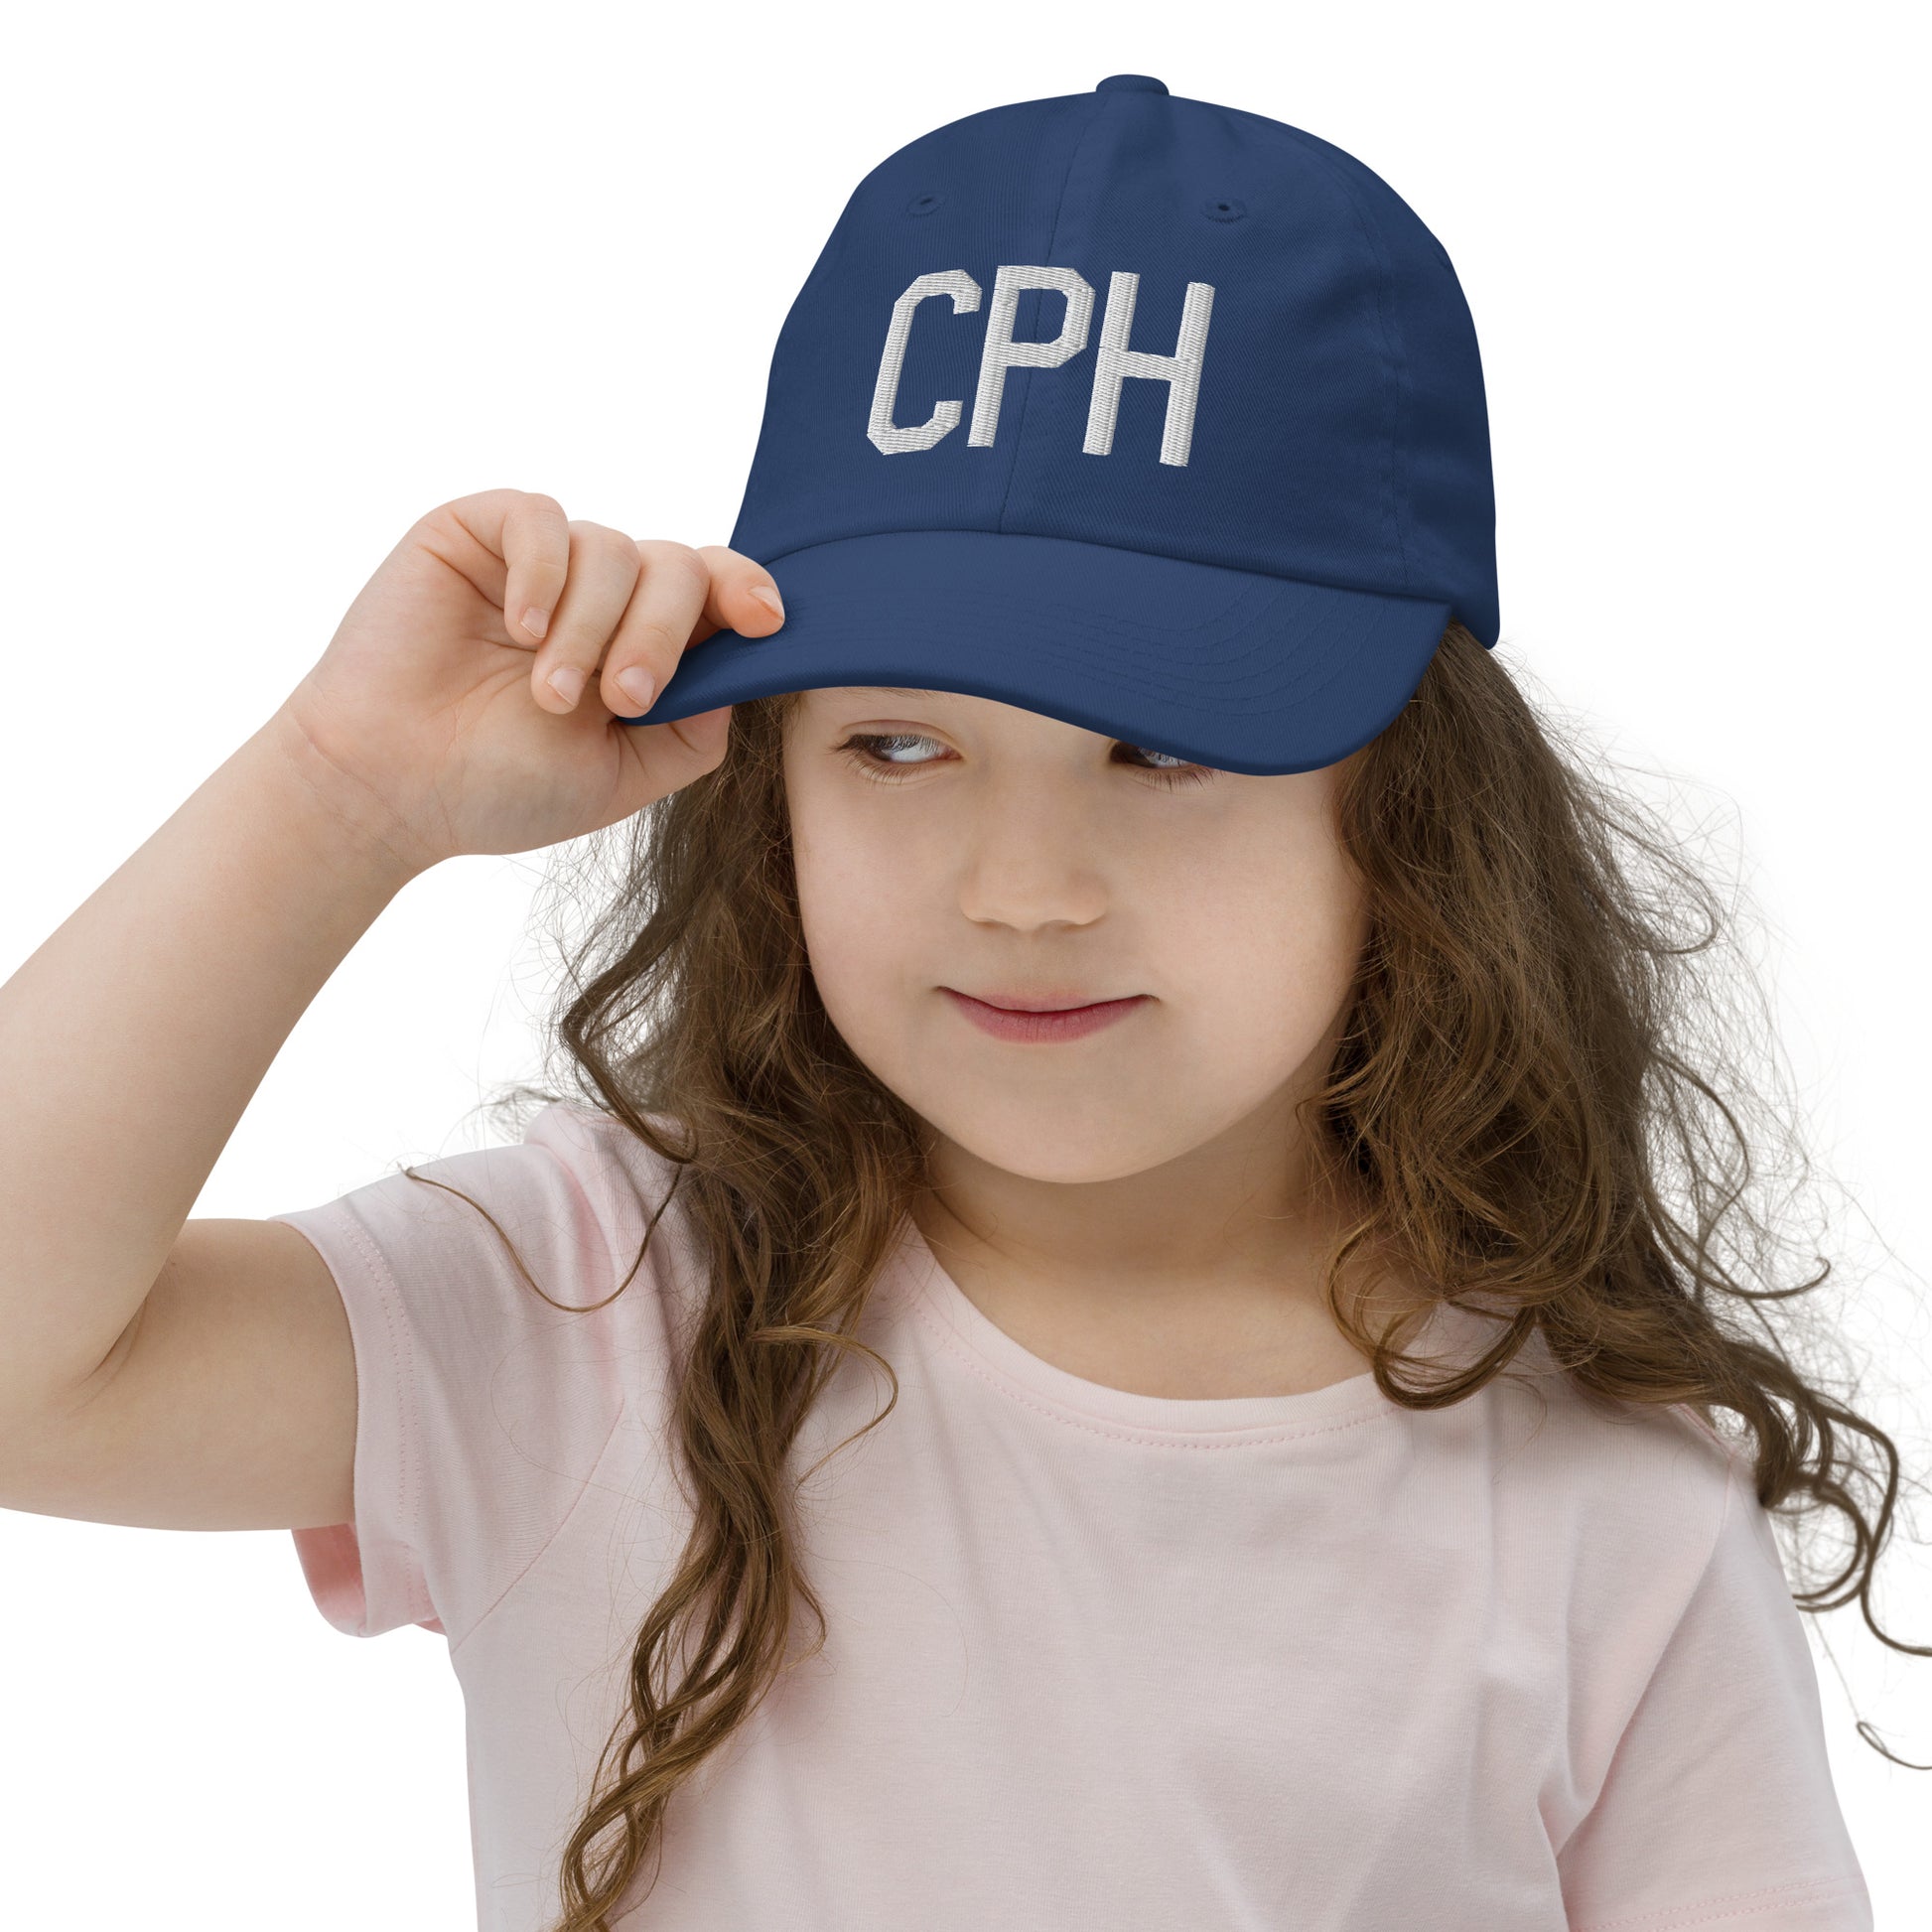 Airport Code Kid's Baseball Cap - White • CPH Copenhagen • YHM Designs - Image 05